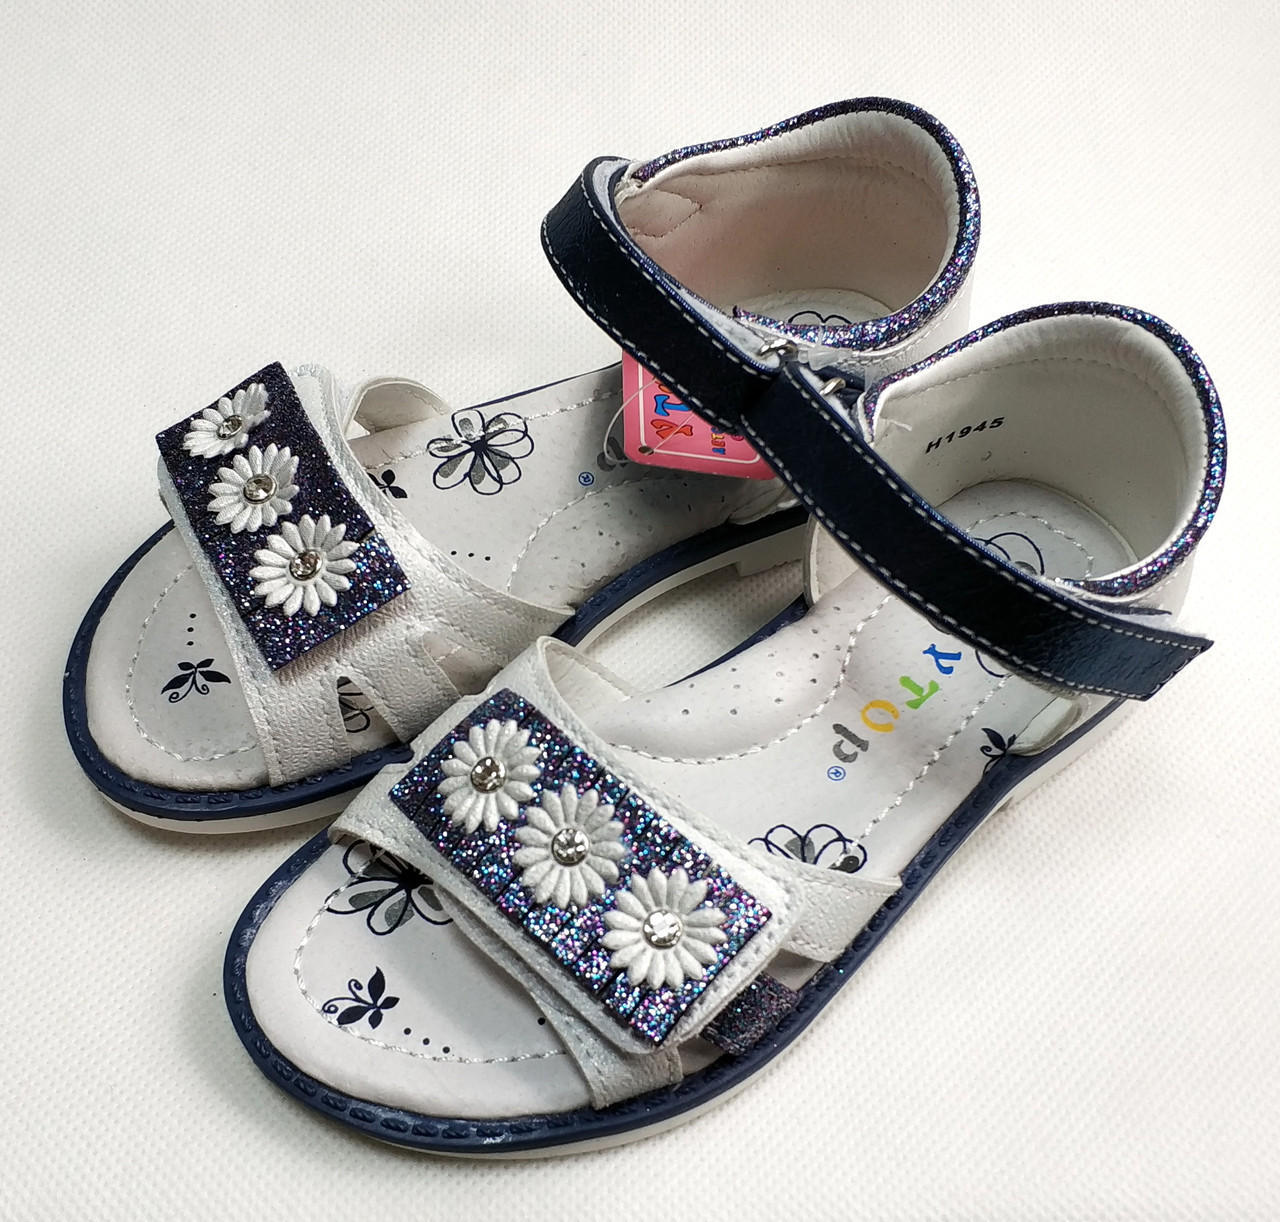 

Детские босоножки сандалии сандали для девочки синяя ромашка y.top 28р 18см, Белый